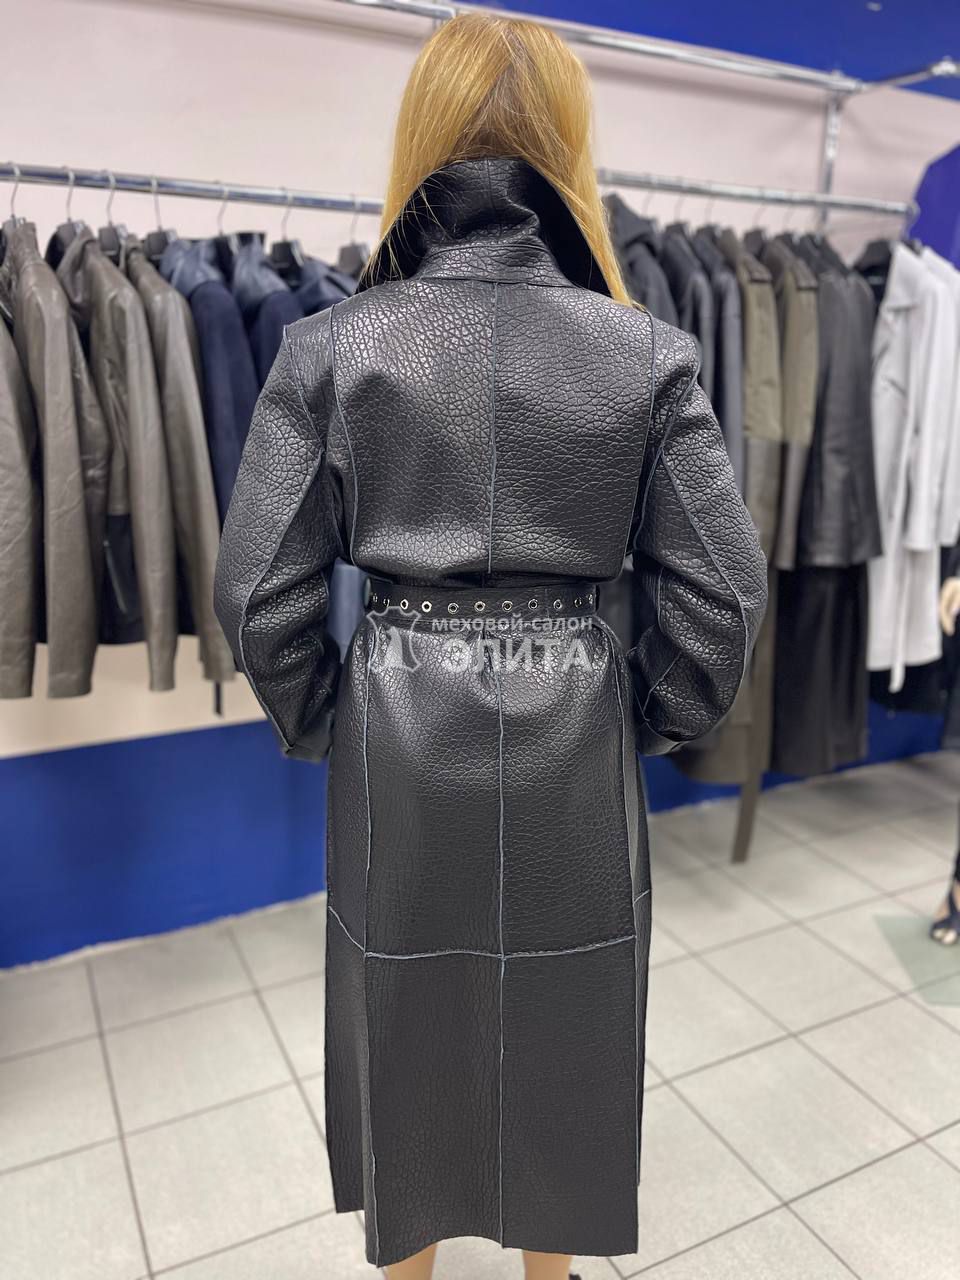 Кожаное пальто м-2825 р-р 46-50, цена 58600 рублей в интернет-магазине кожи и меха ЭЛИТА. Вид 2